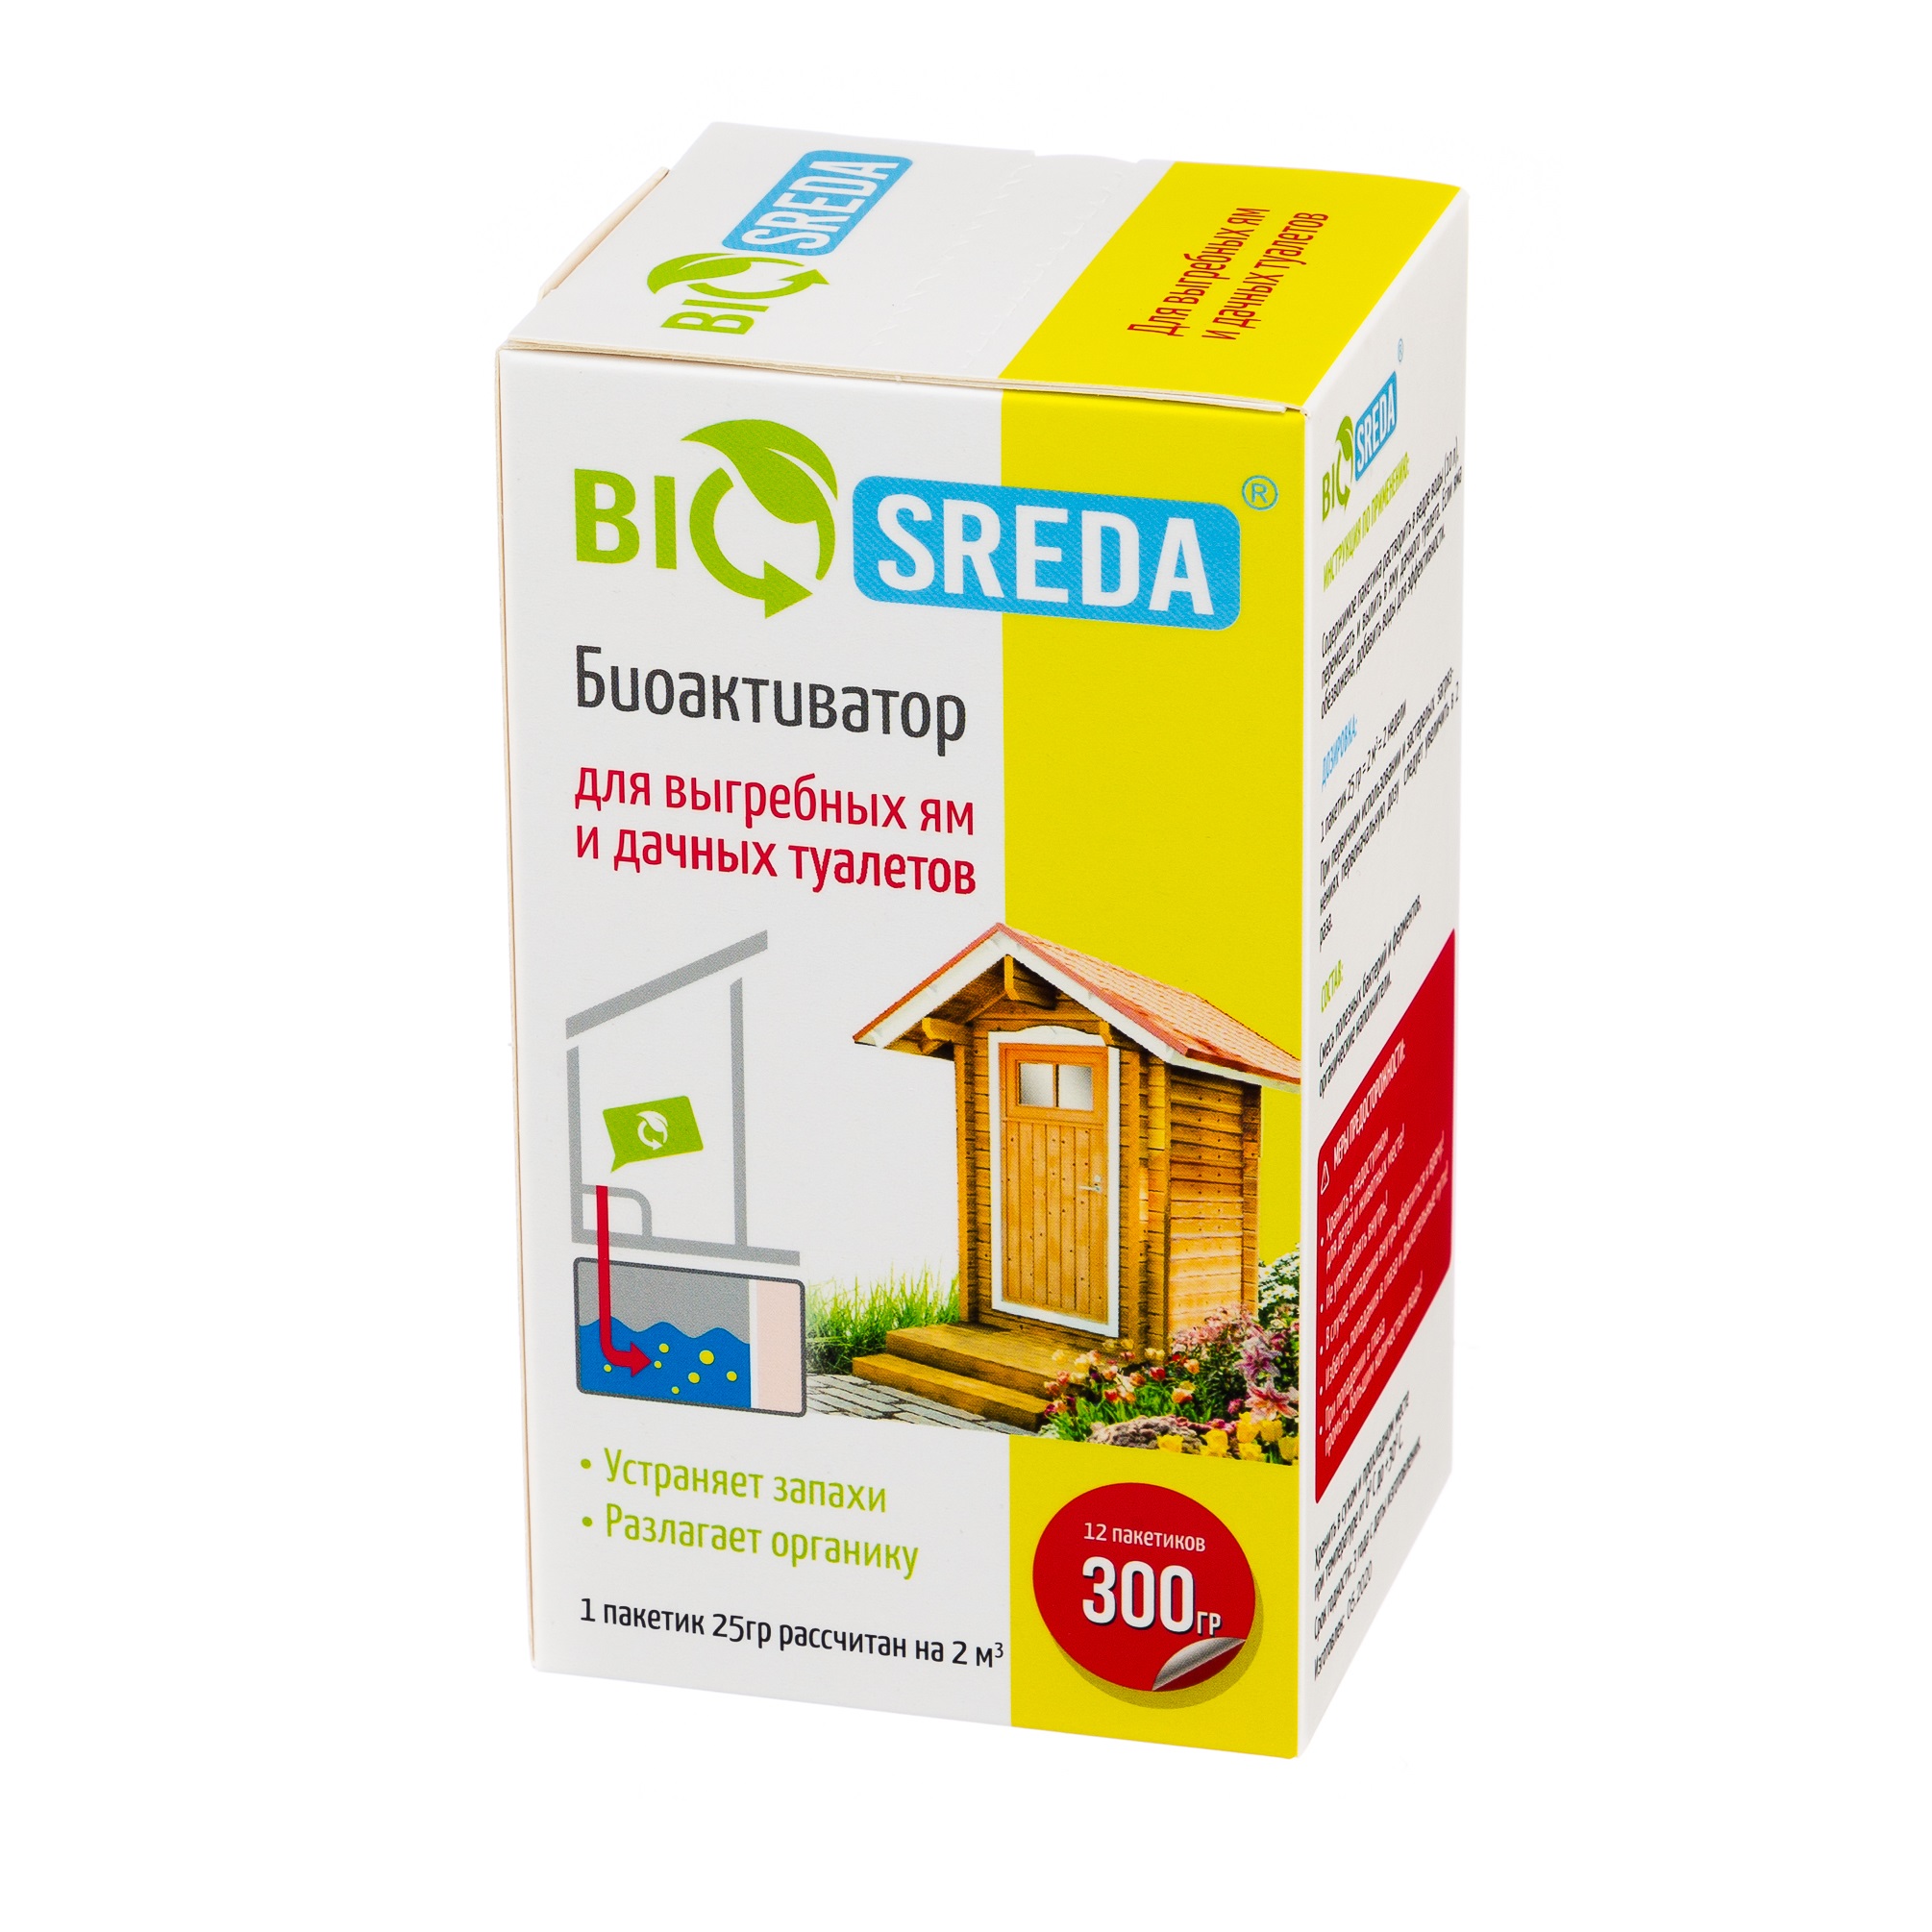 Биоактиватор Biosreda для выгребных ям и дачных туалетов, 300 гр 12 пакетов цена и фото